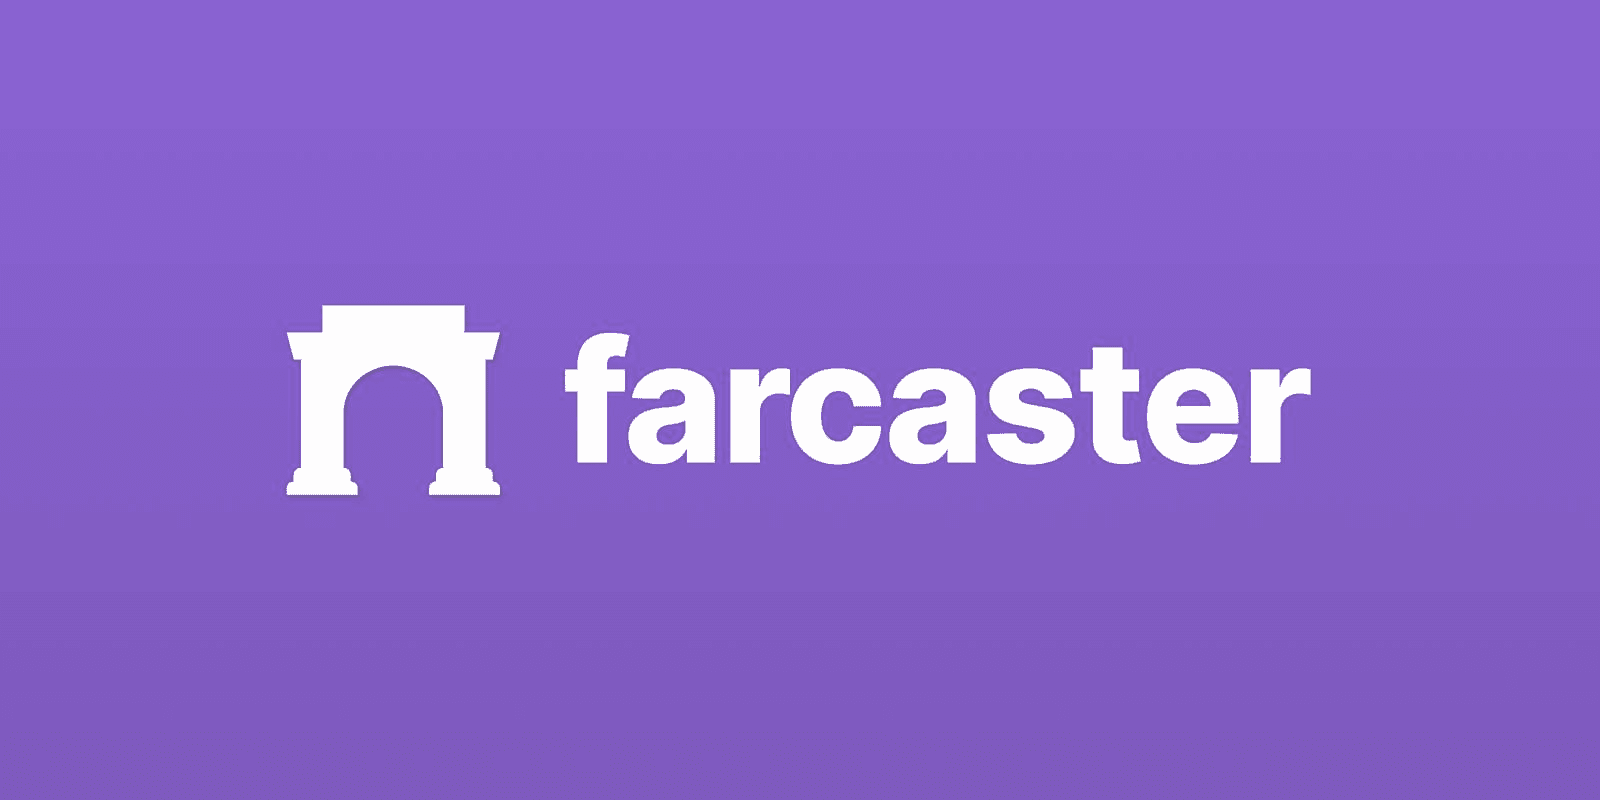 farcaster được xây dựng trên ethereum